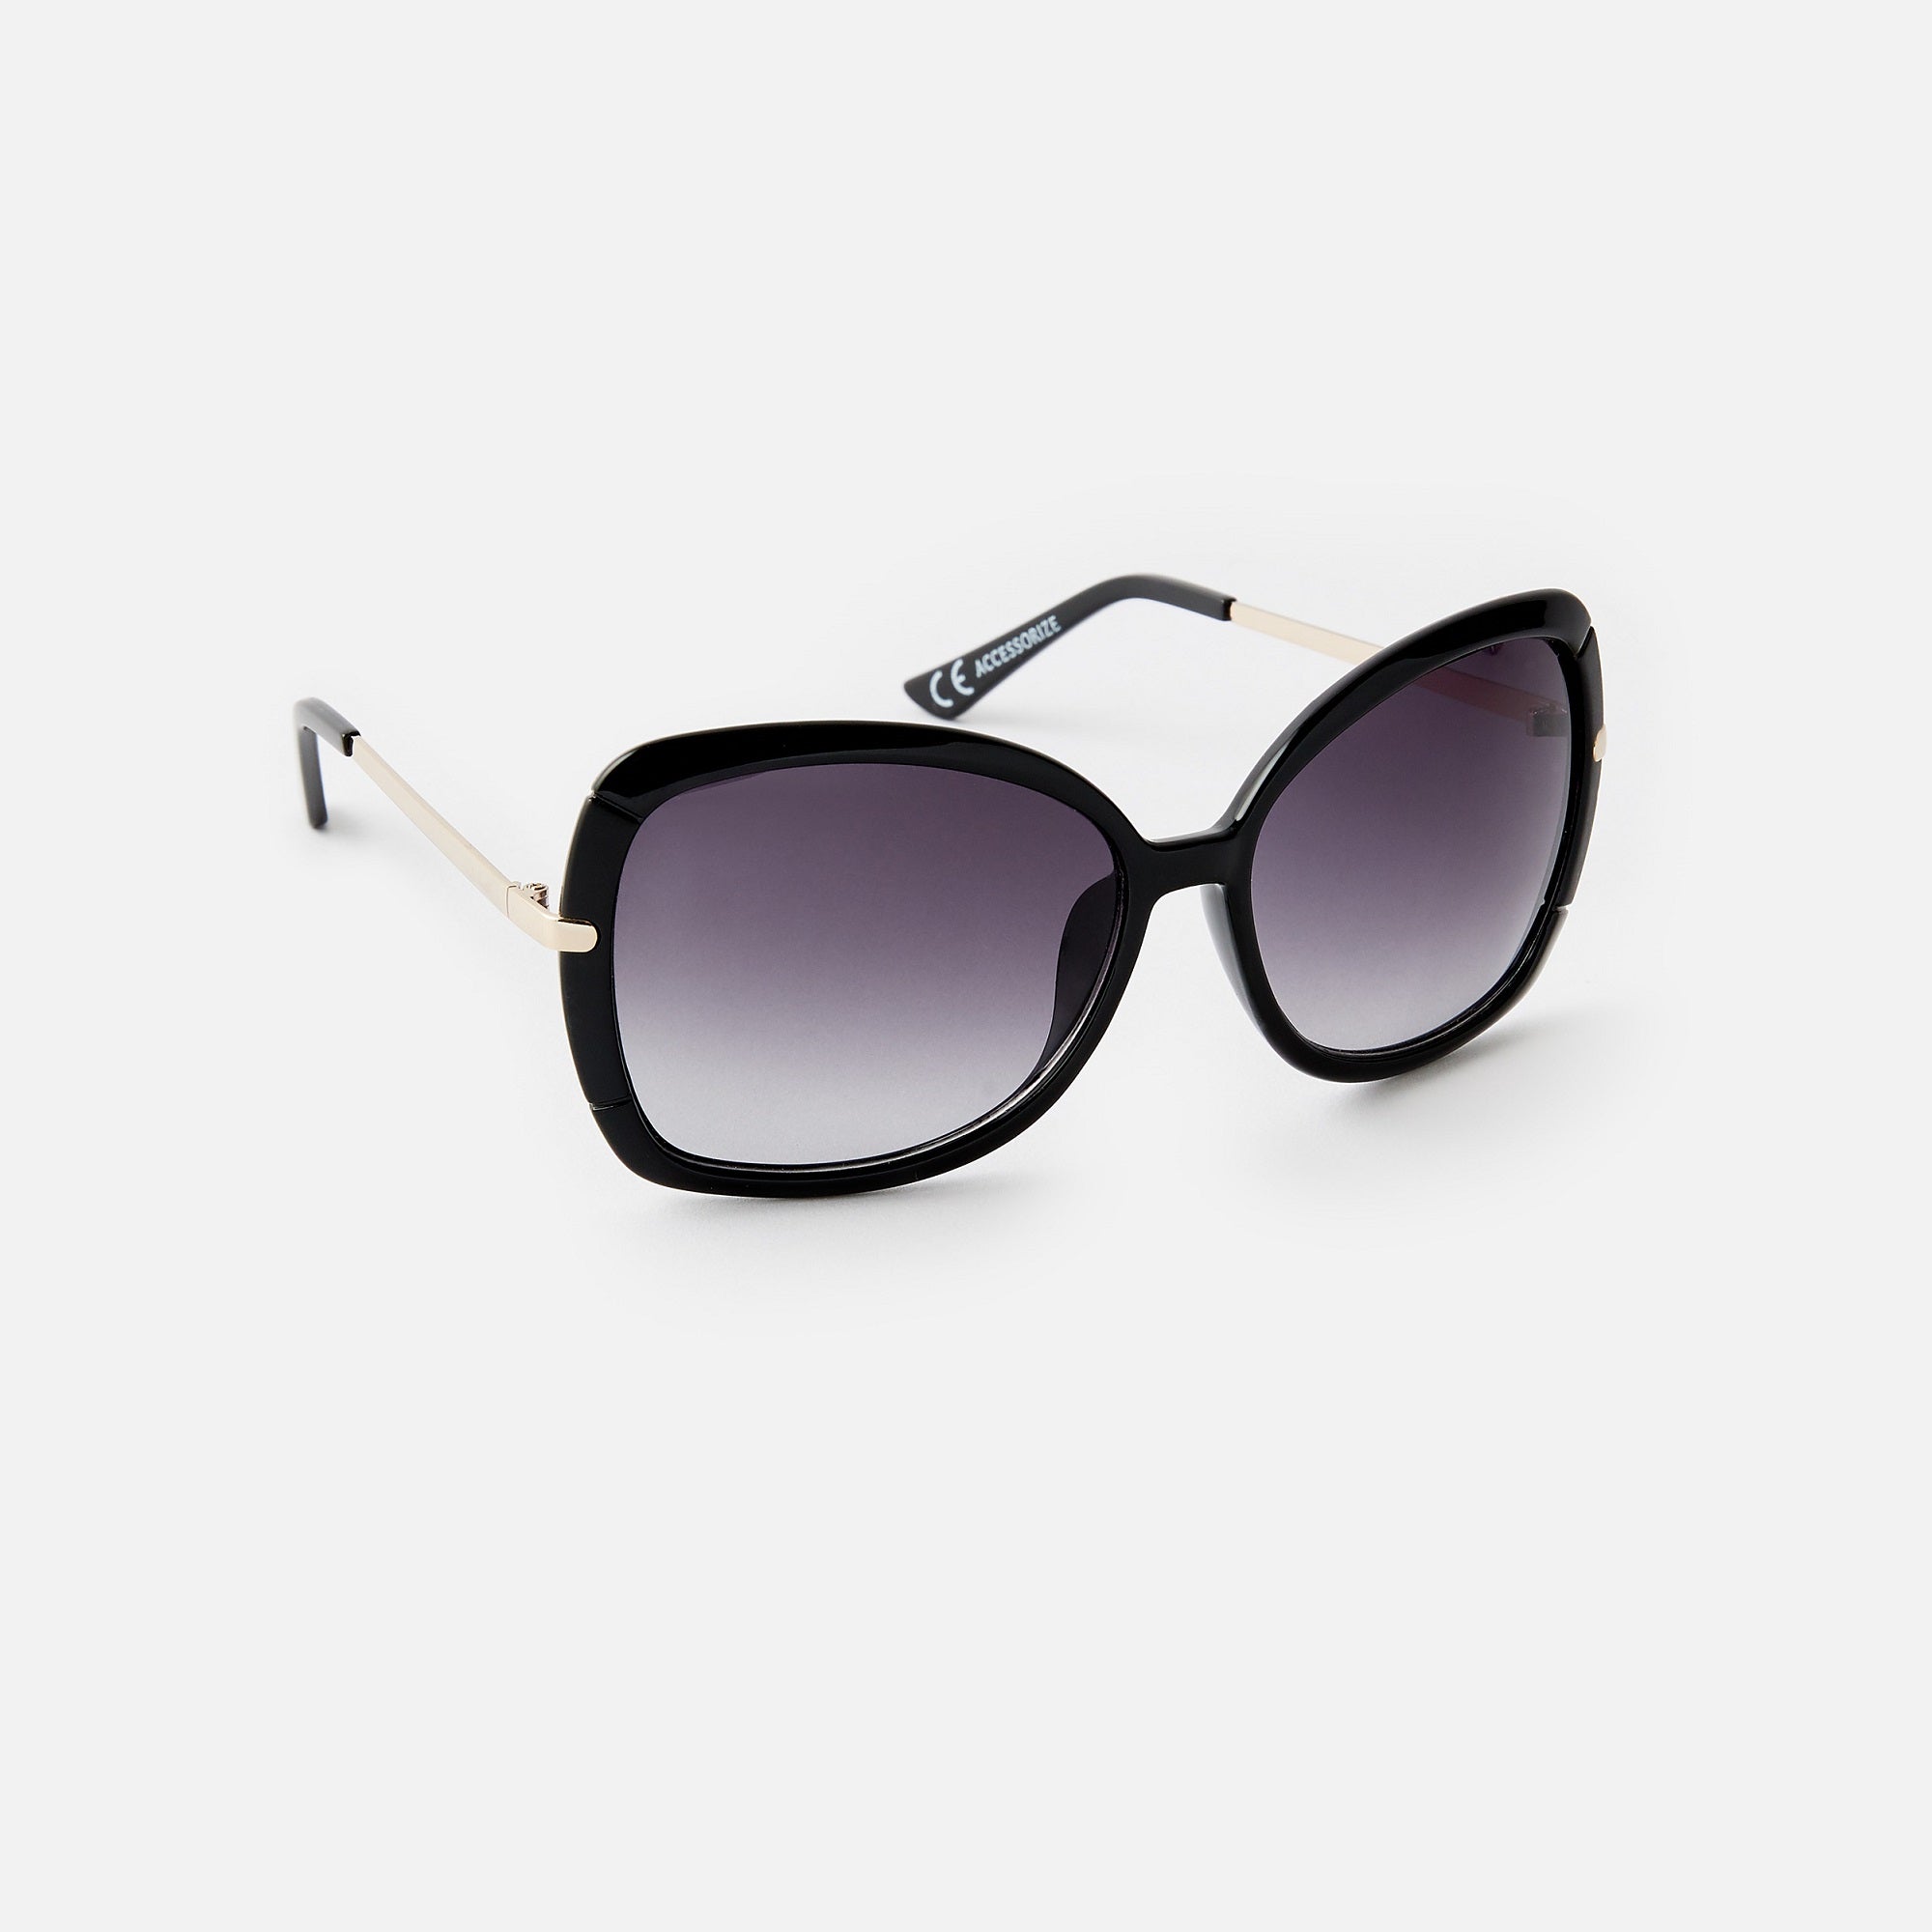 Accessorize London Sophie Metal Detail Square Sunglasses